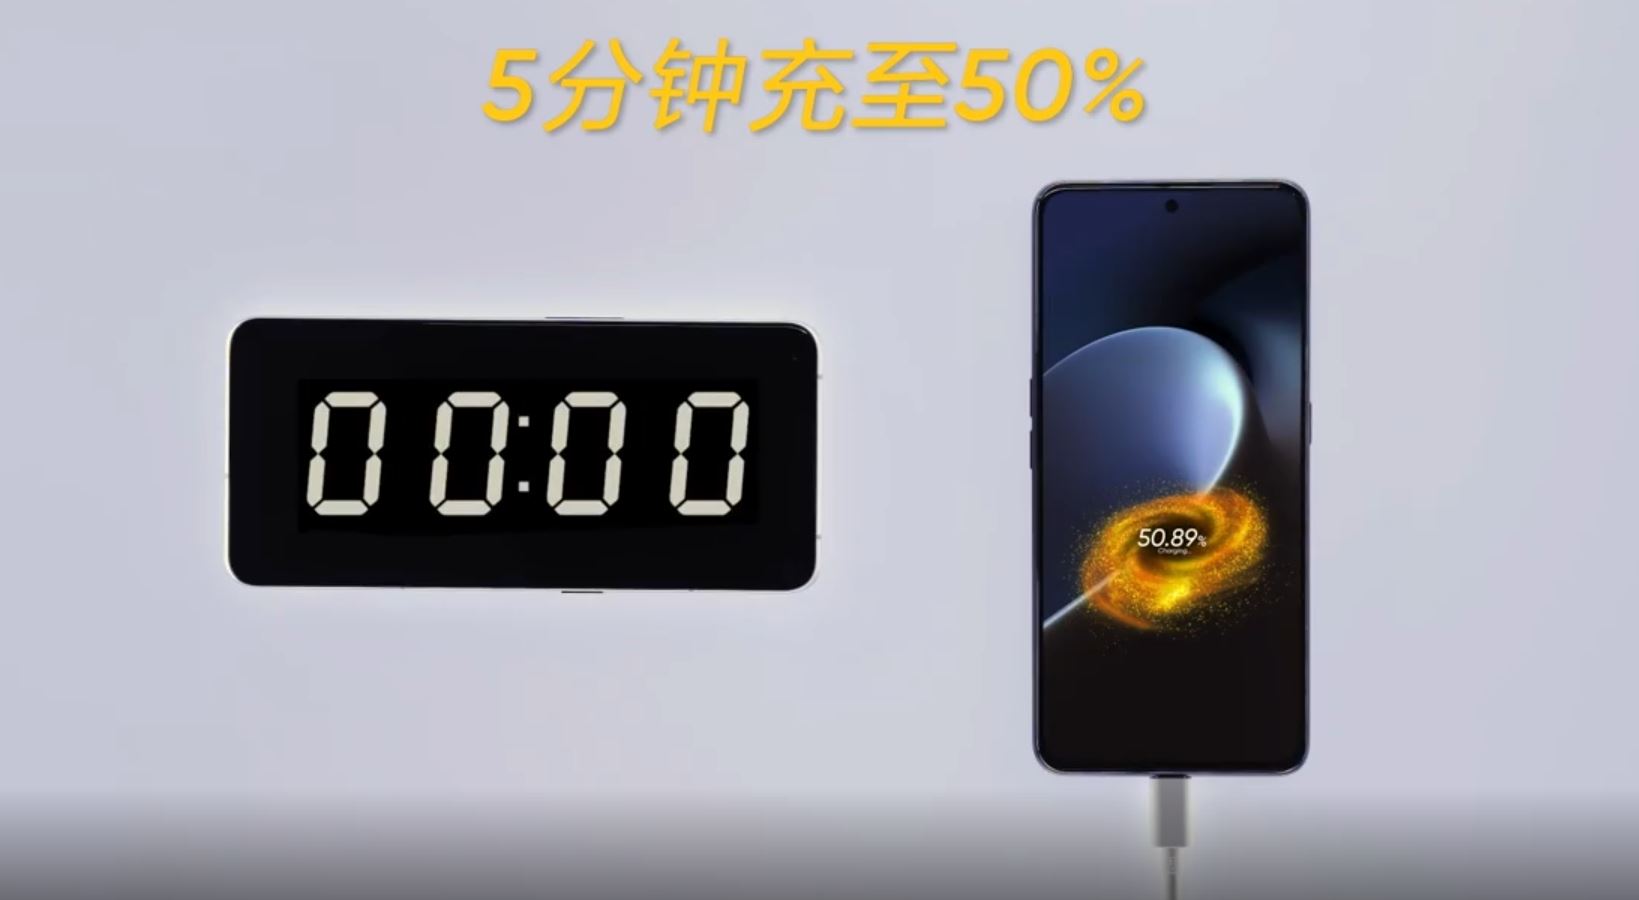 Realme ปล่อยคลิปใหม่ อวดเทคโนโลยี UltraDart 150W ชาร์จ 50% ภายใน 5 นาที!